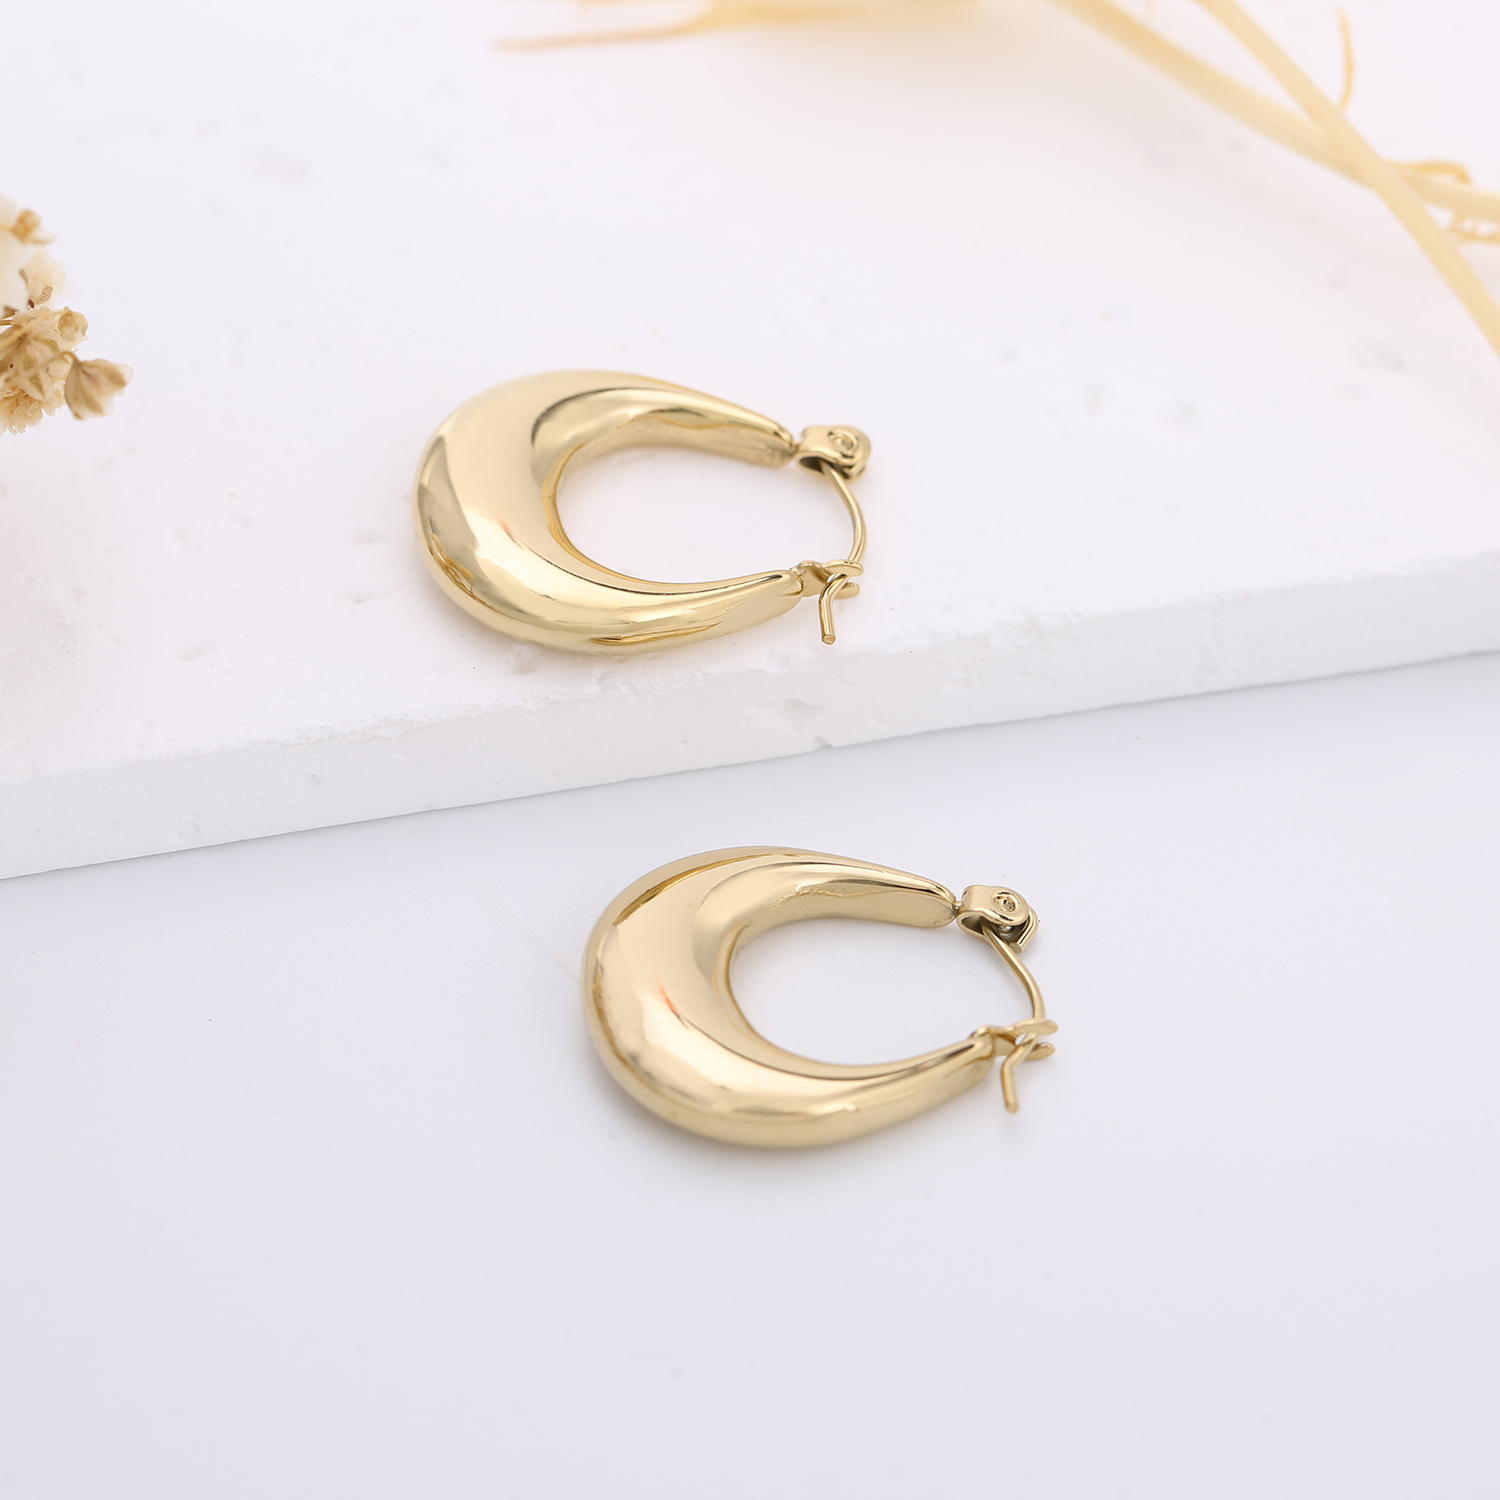 Fashion Jewelry for Women Stainless Steel Hoop Earrings Stainless Steel Tarnish Free Hollow Earrings 18k Gold Oval Hoop Earrings